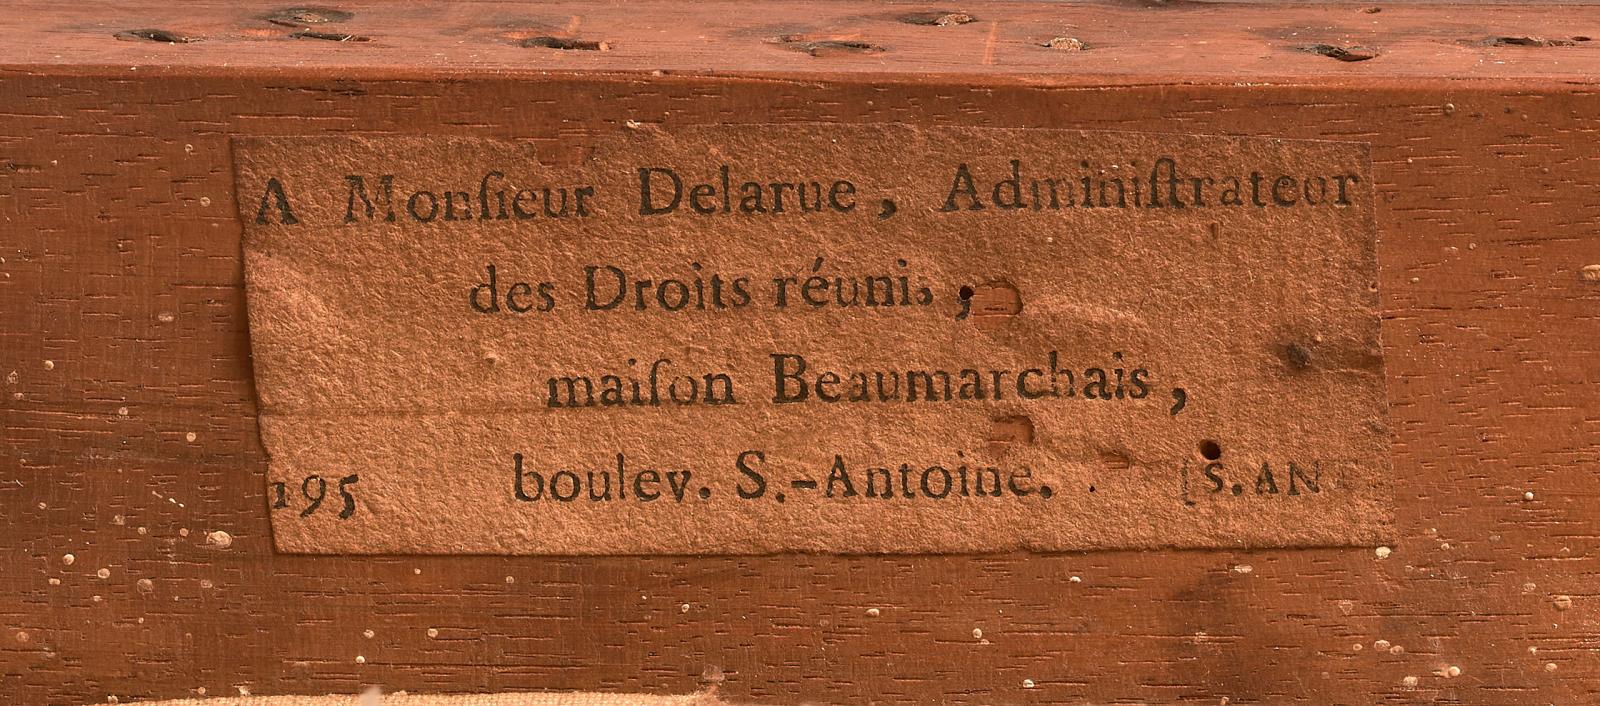 Cette étiquette imprimée «Monsieur Delarue, administrateur des Droits réunis, maison Beaumarchais, boulev. S.-Antoine» est présente sur le